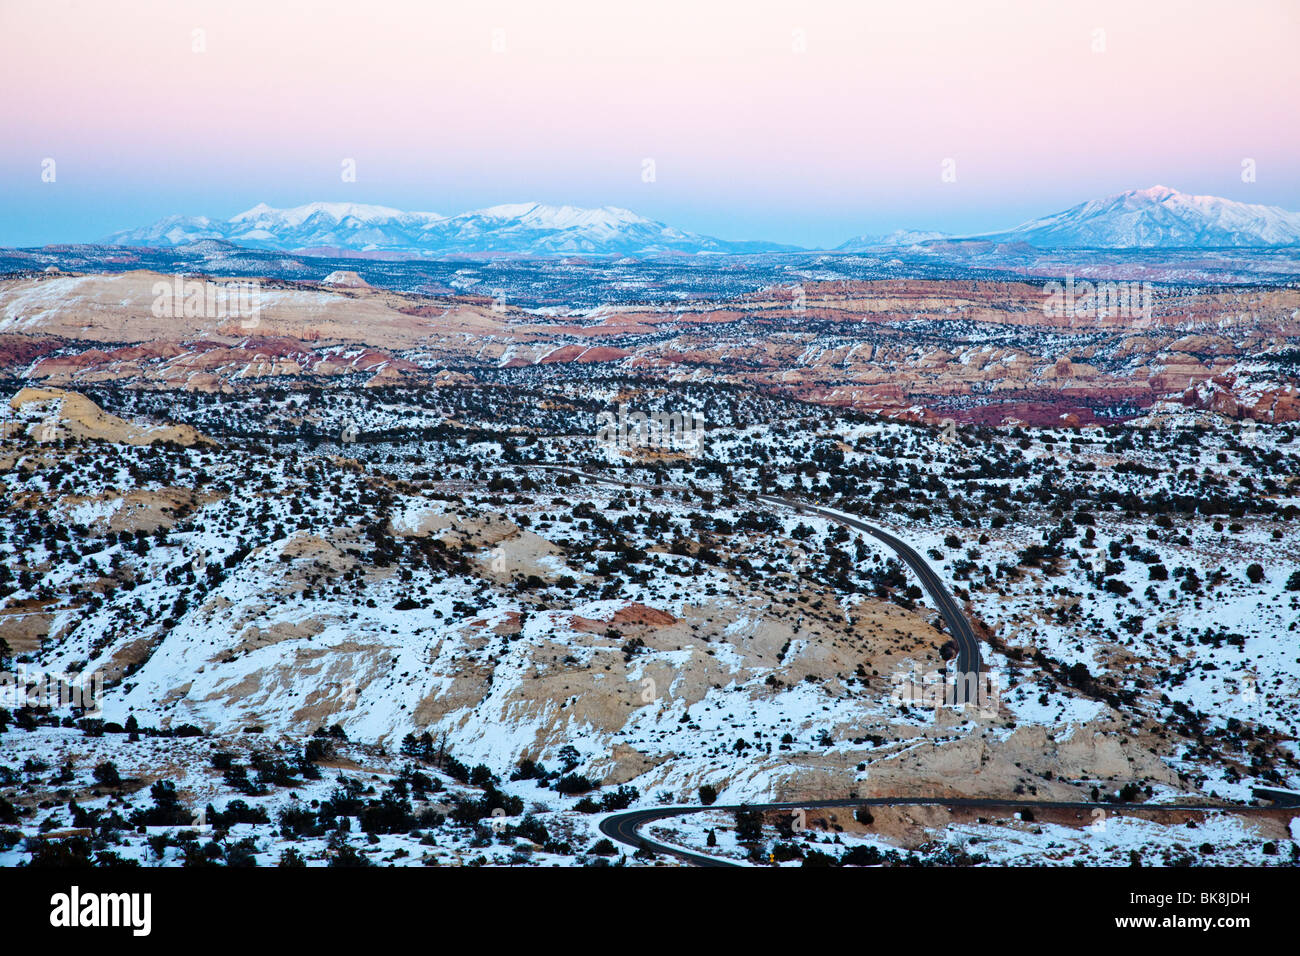 In un punto panoramico su Southern Utah's Scenic Byway 12 mostra il Henry le montagne come sfondo. Foto Stock